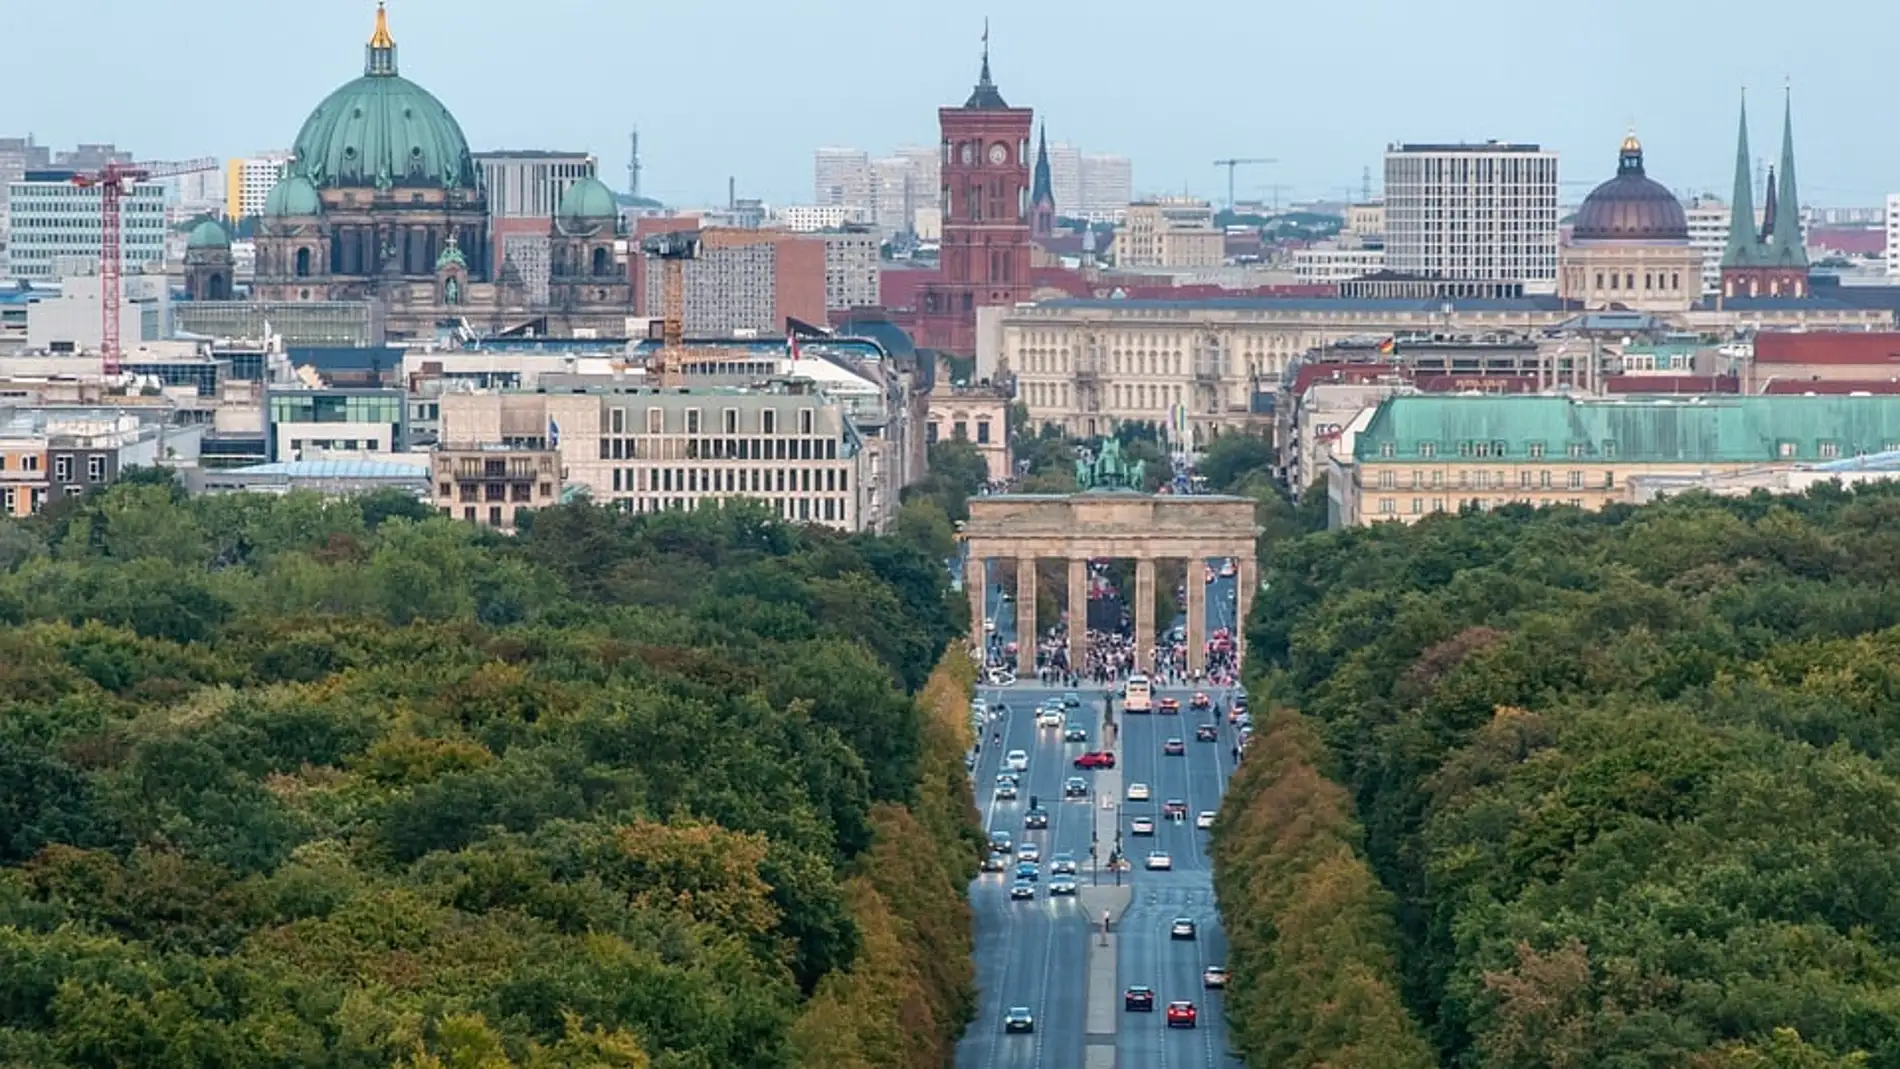 Panormámica de Berlín con la Puerta de Brandemburgo en el centro.